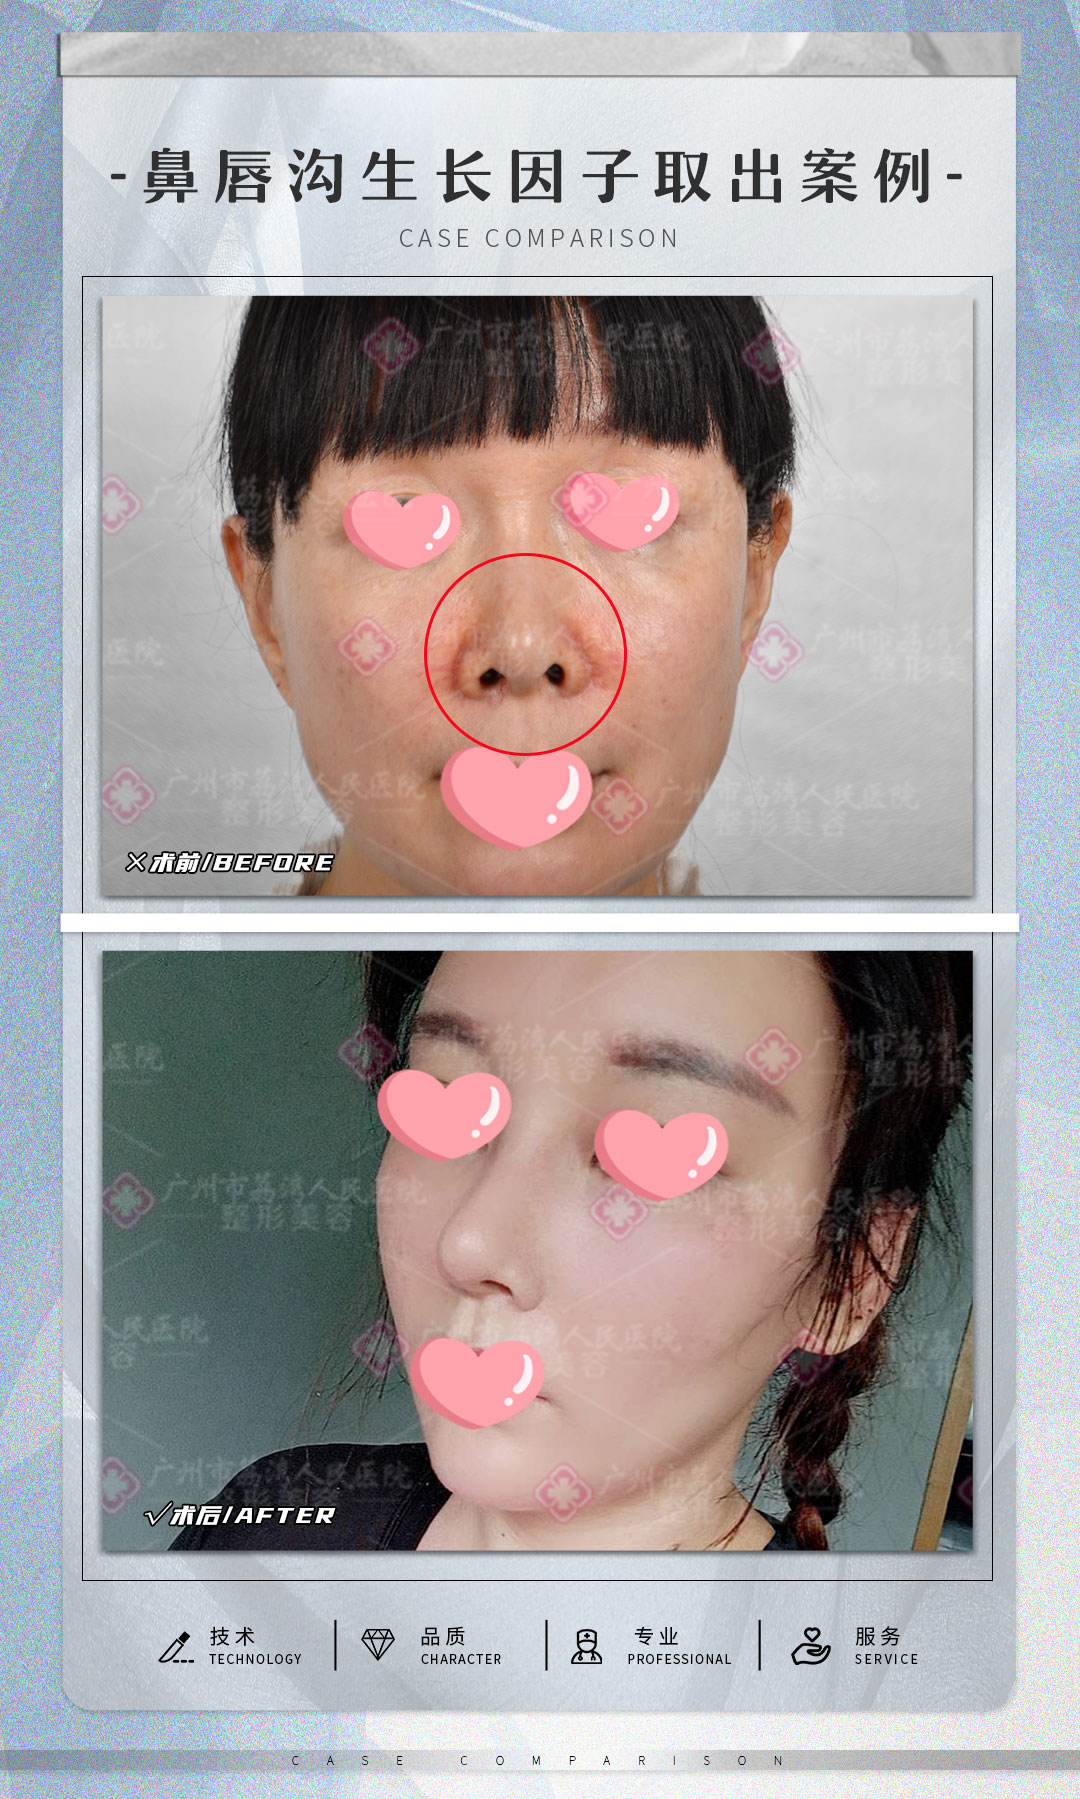 医美隆鼻整形对比海报PSD广告设计素材海报模板免费下载-享设计